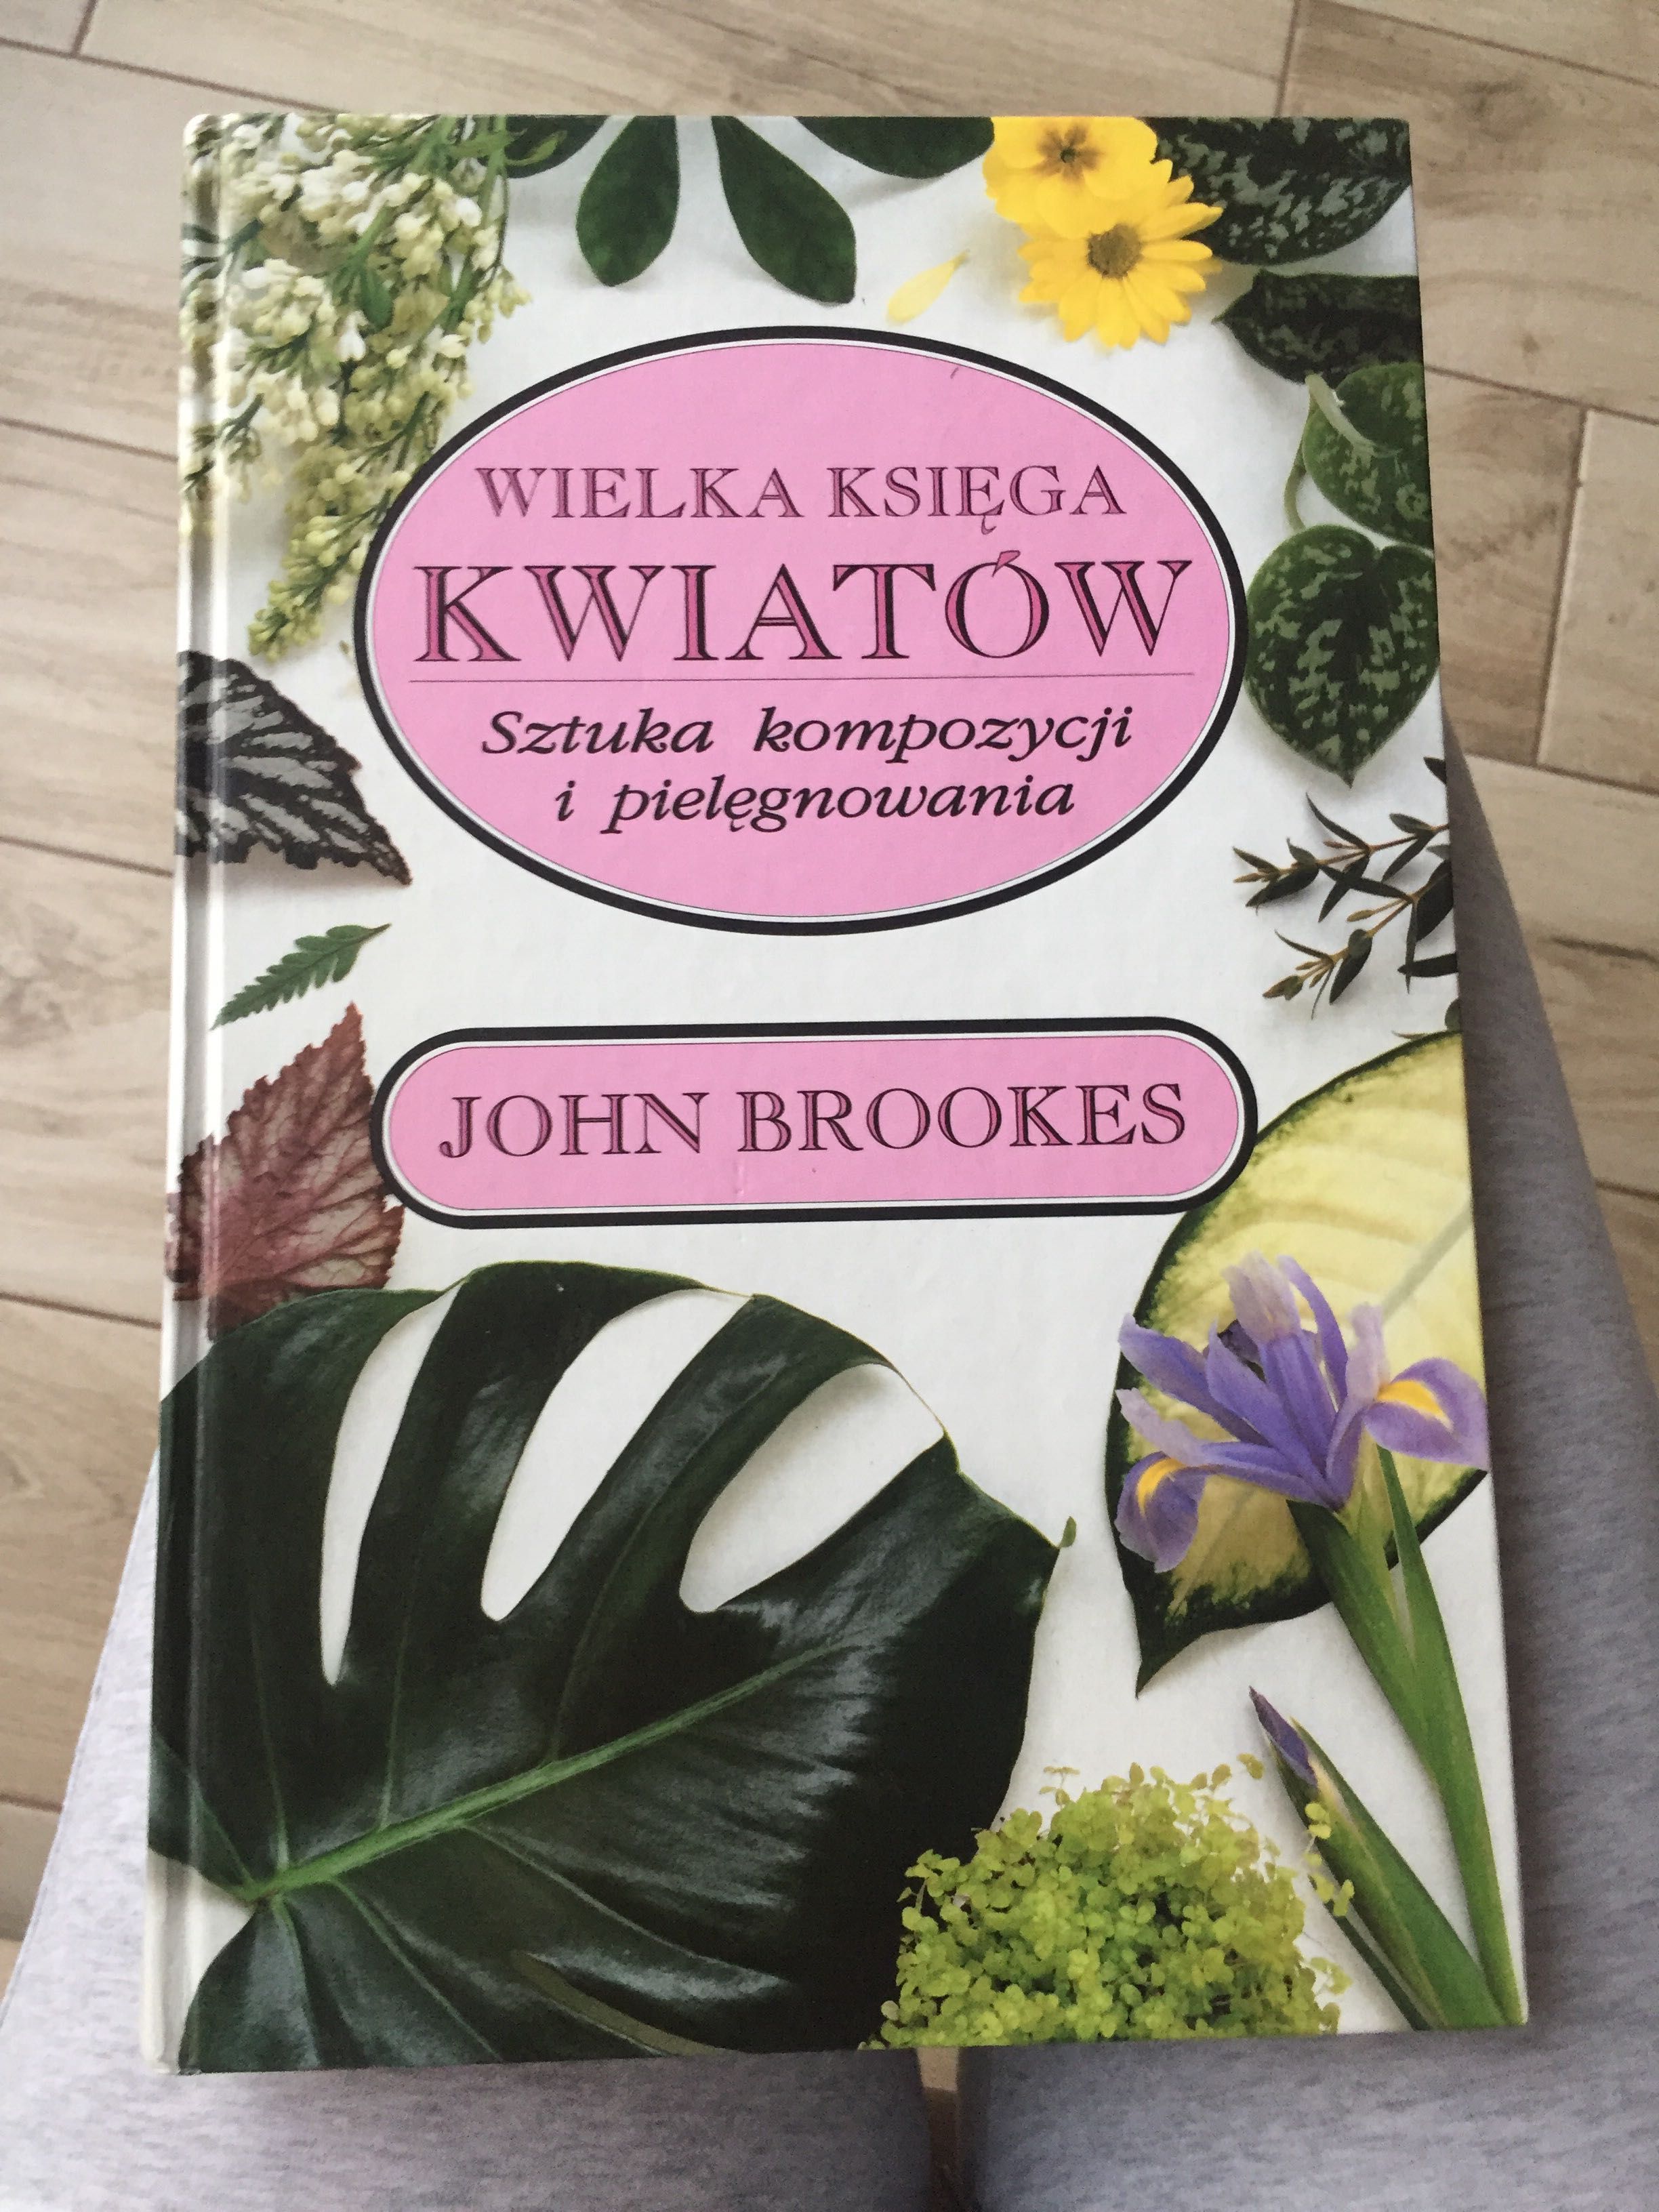 Wielka księga kwiatów John Brookes